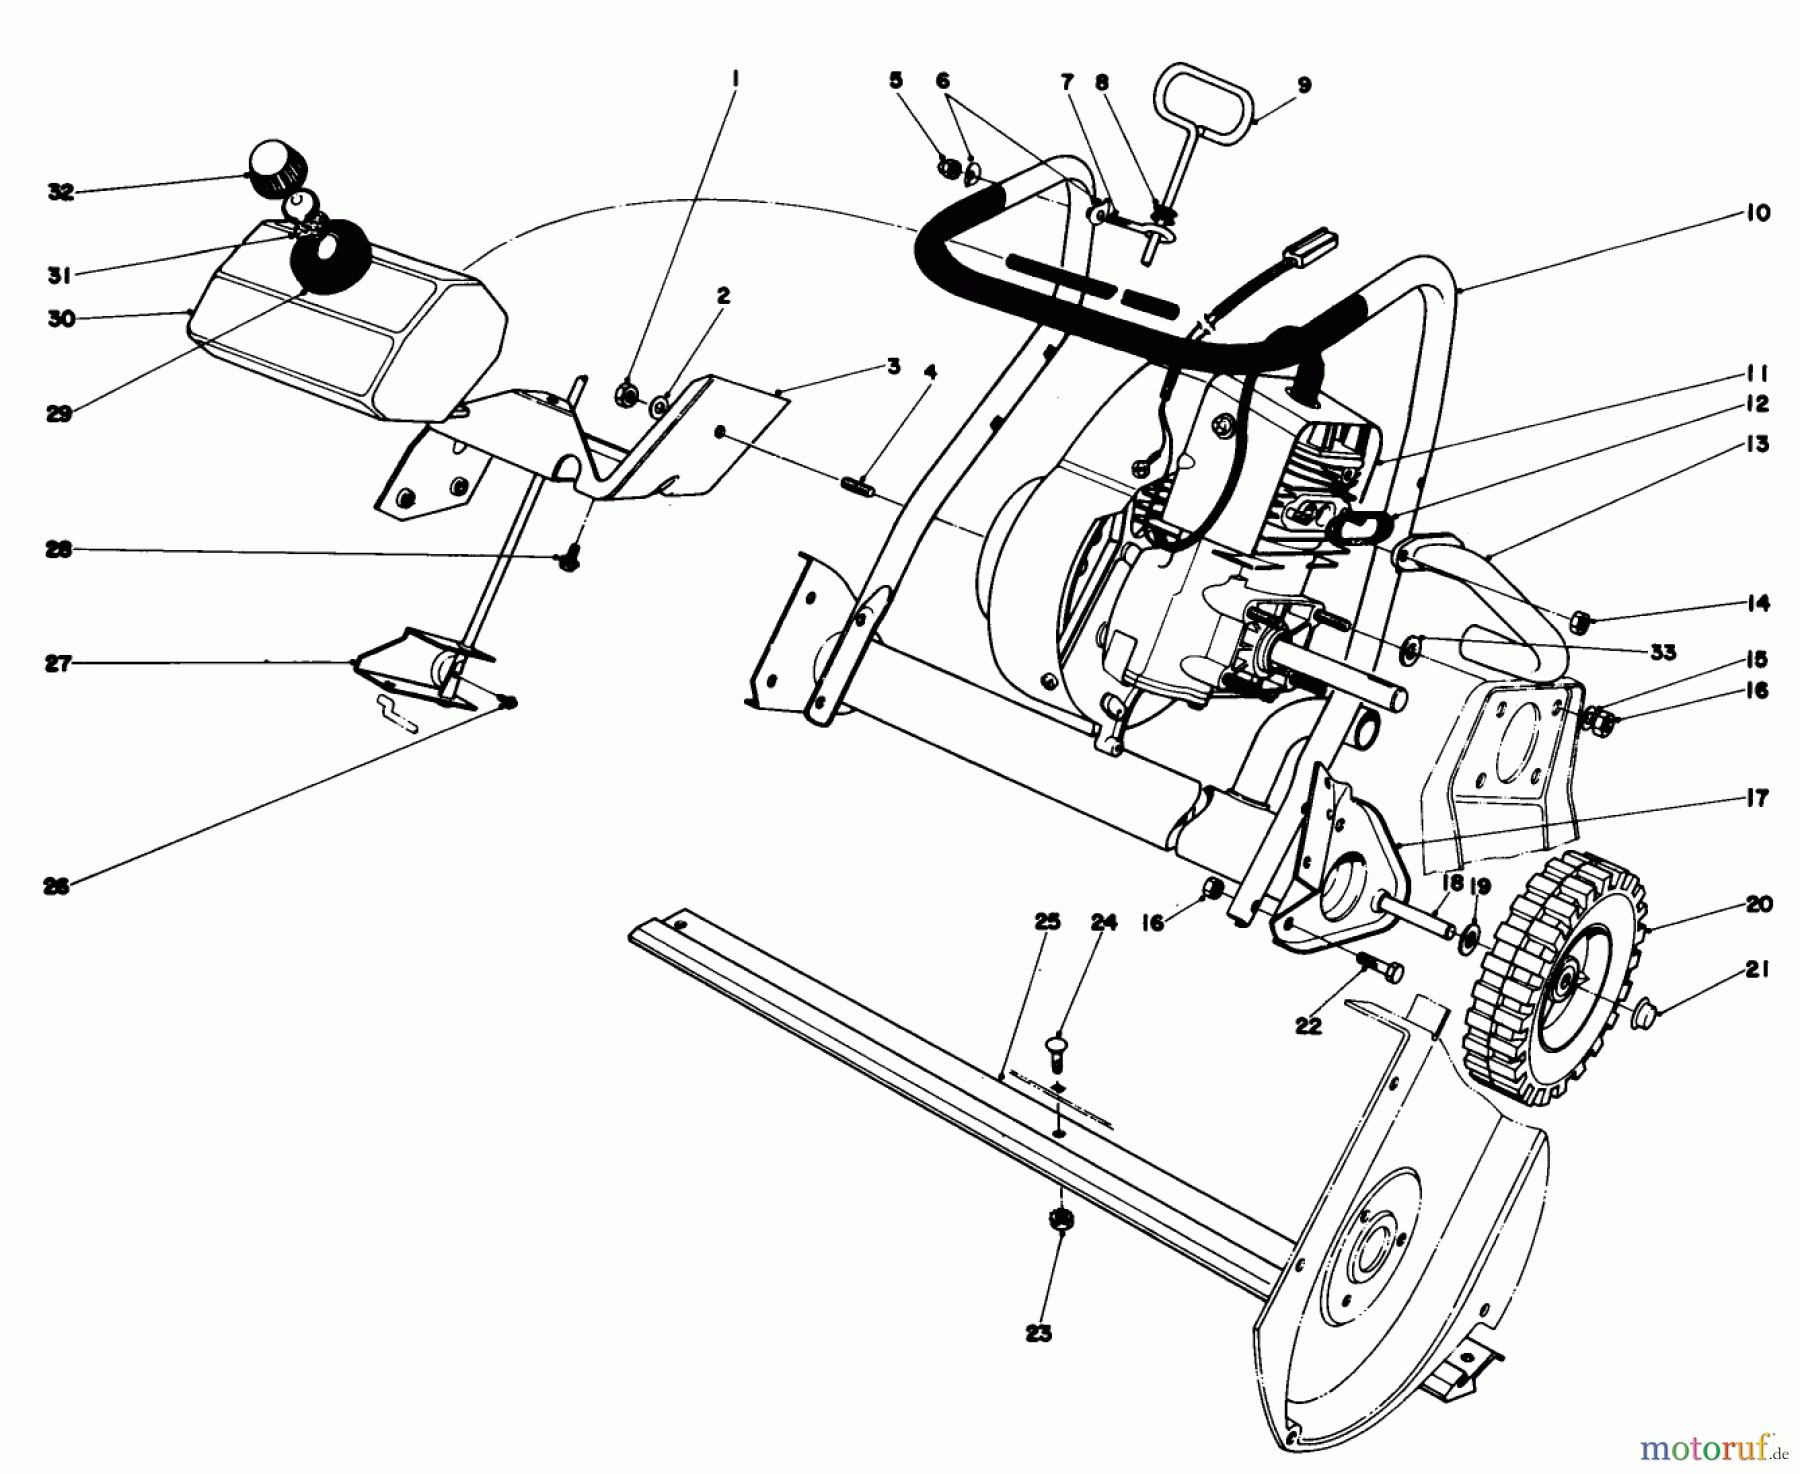  Toro Neu Snow Blowers/Snow Throwers Seite 1 38020 - Toro Snow Master 20, 1978 (8000001-8999999) ENGINE ASSEMBLY (MODEL 38020)